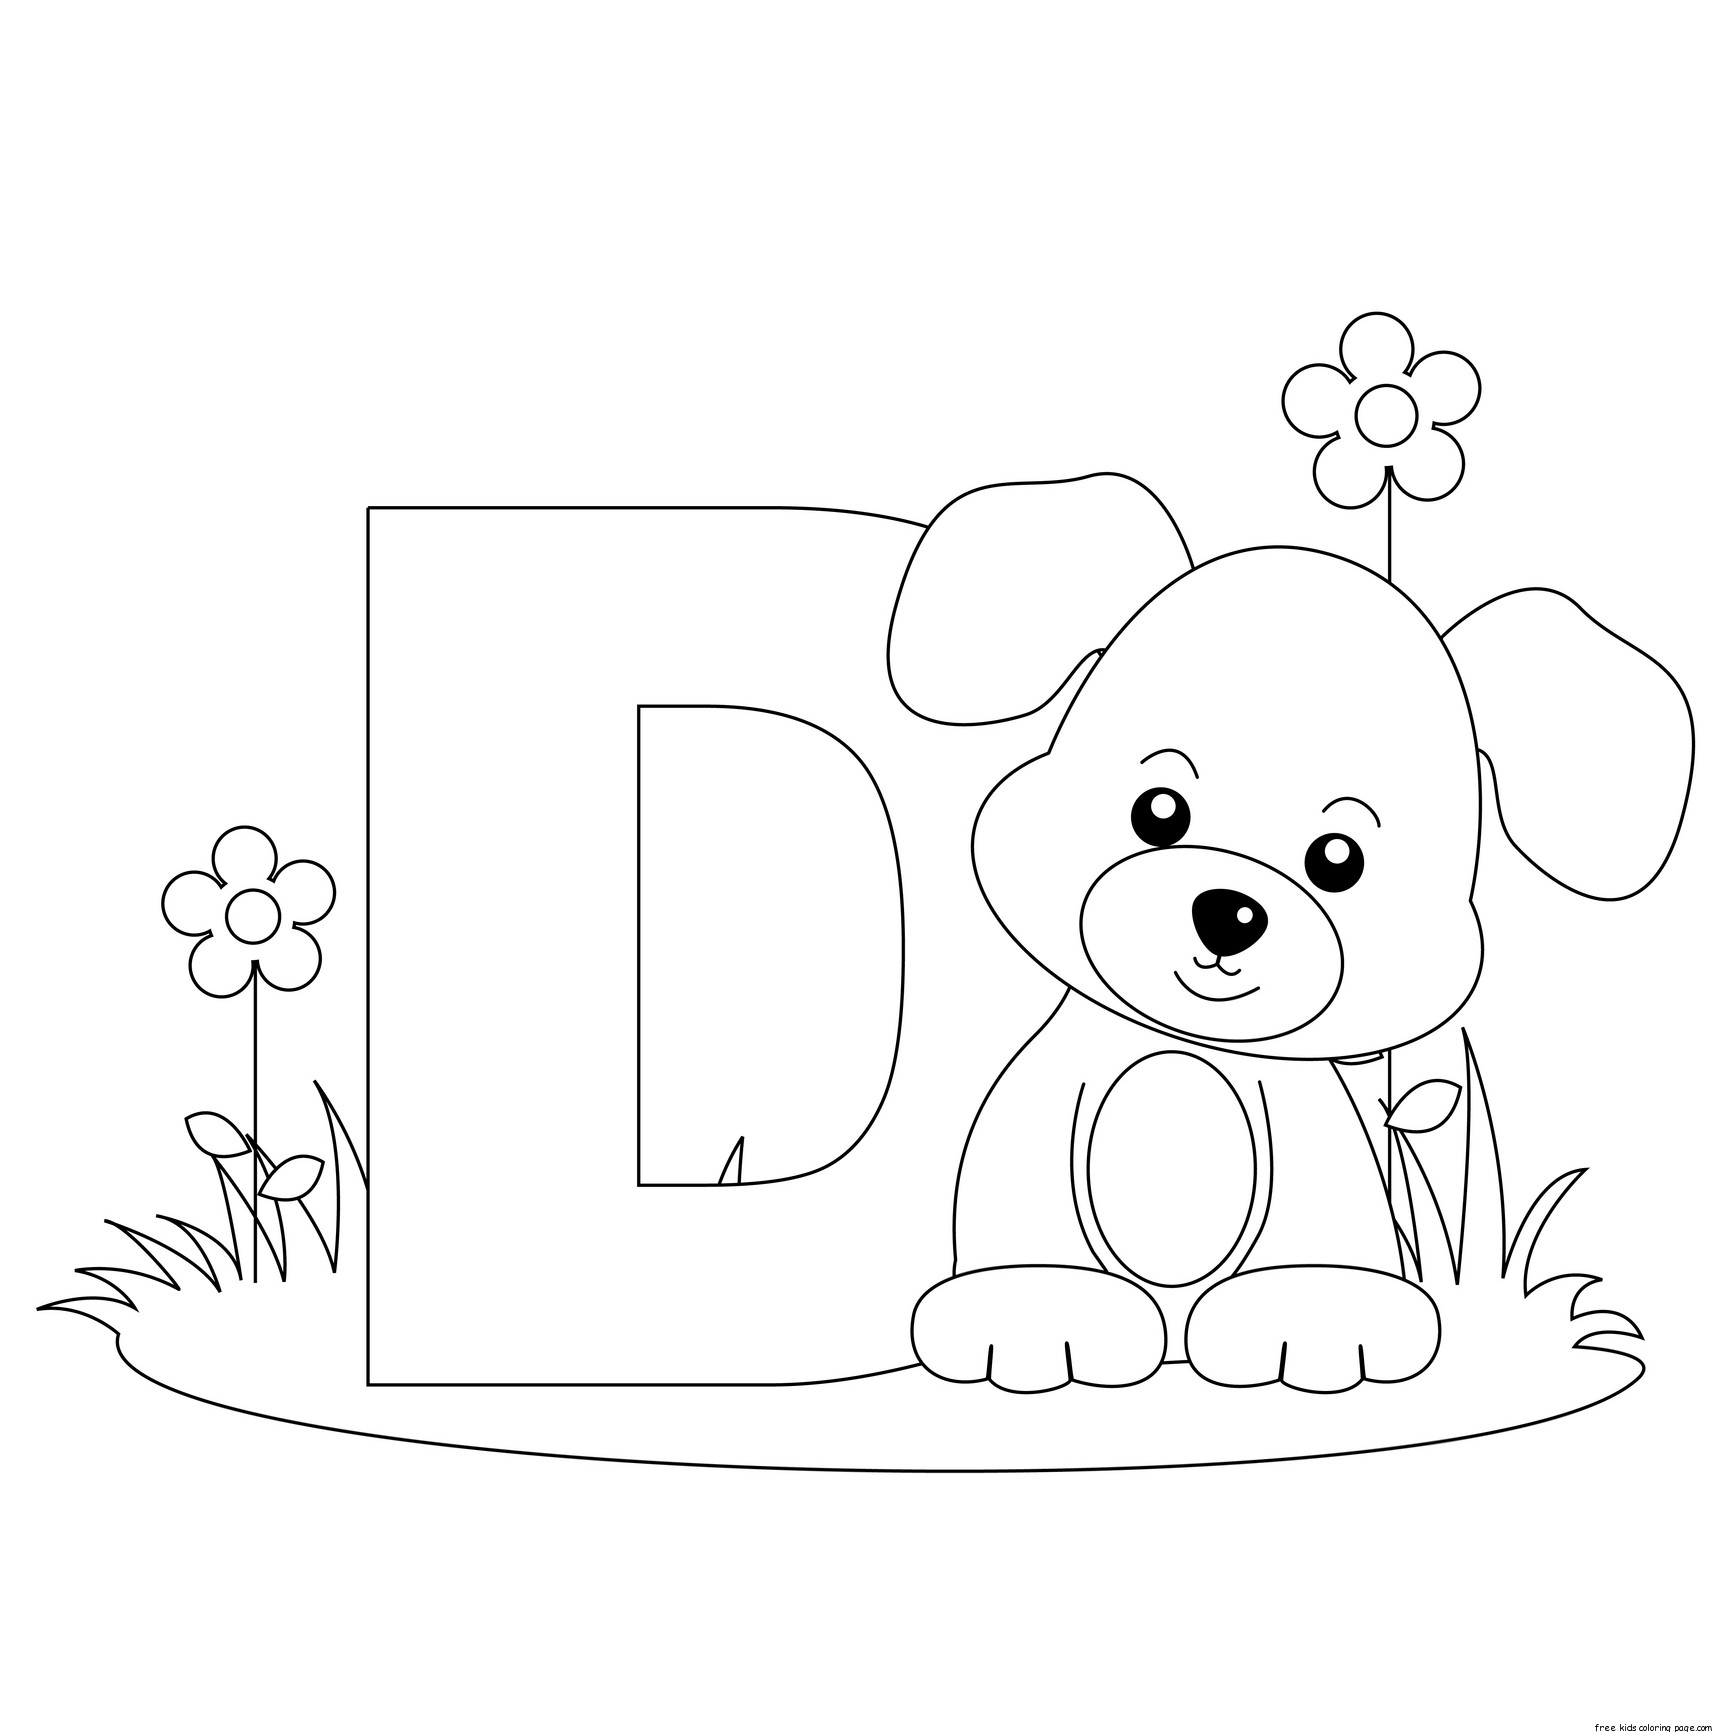 Printable Animal Alphabet Letter D for Dog